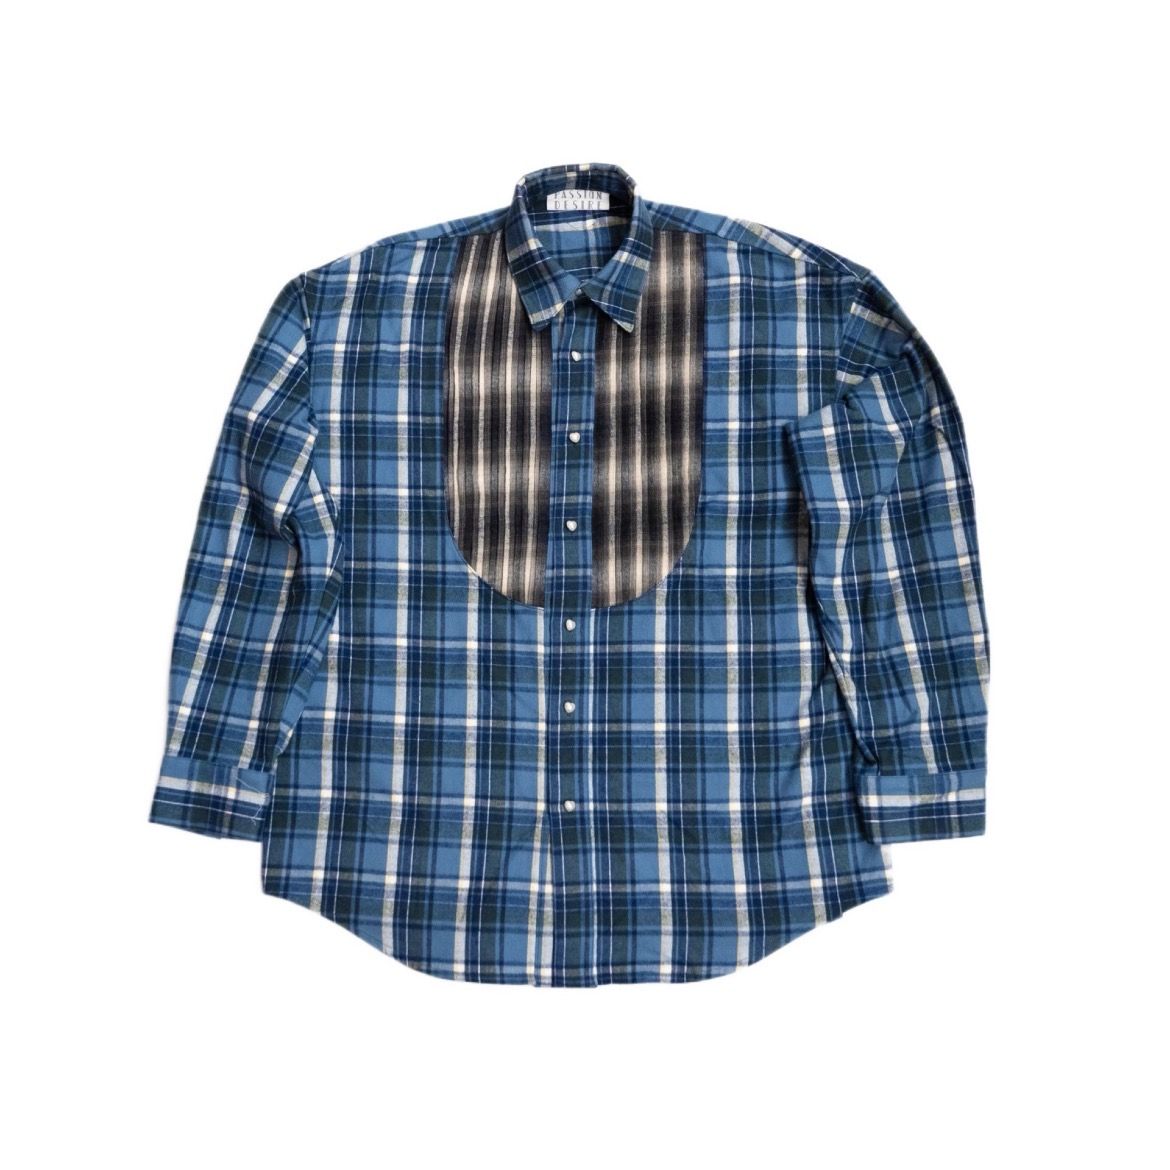 el conductorH - 【残り一点】Combination Check Flannel Shirt | ACRMTSM ONLINE STORE